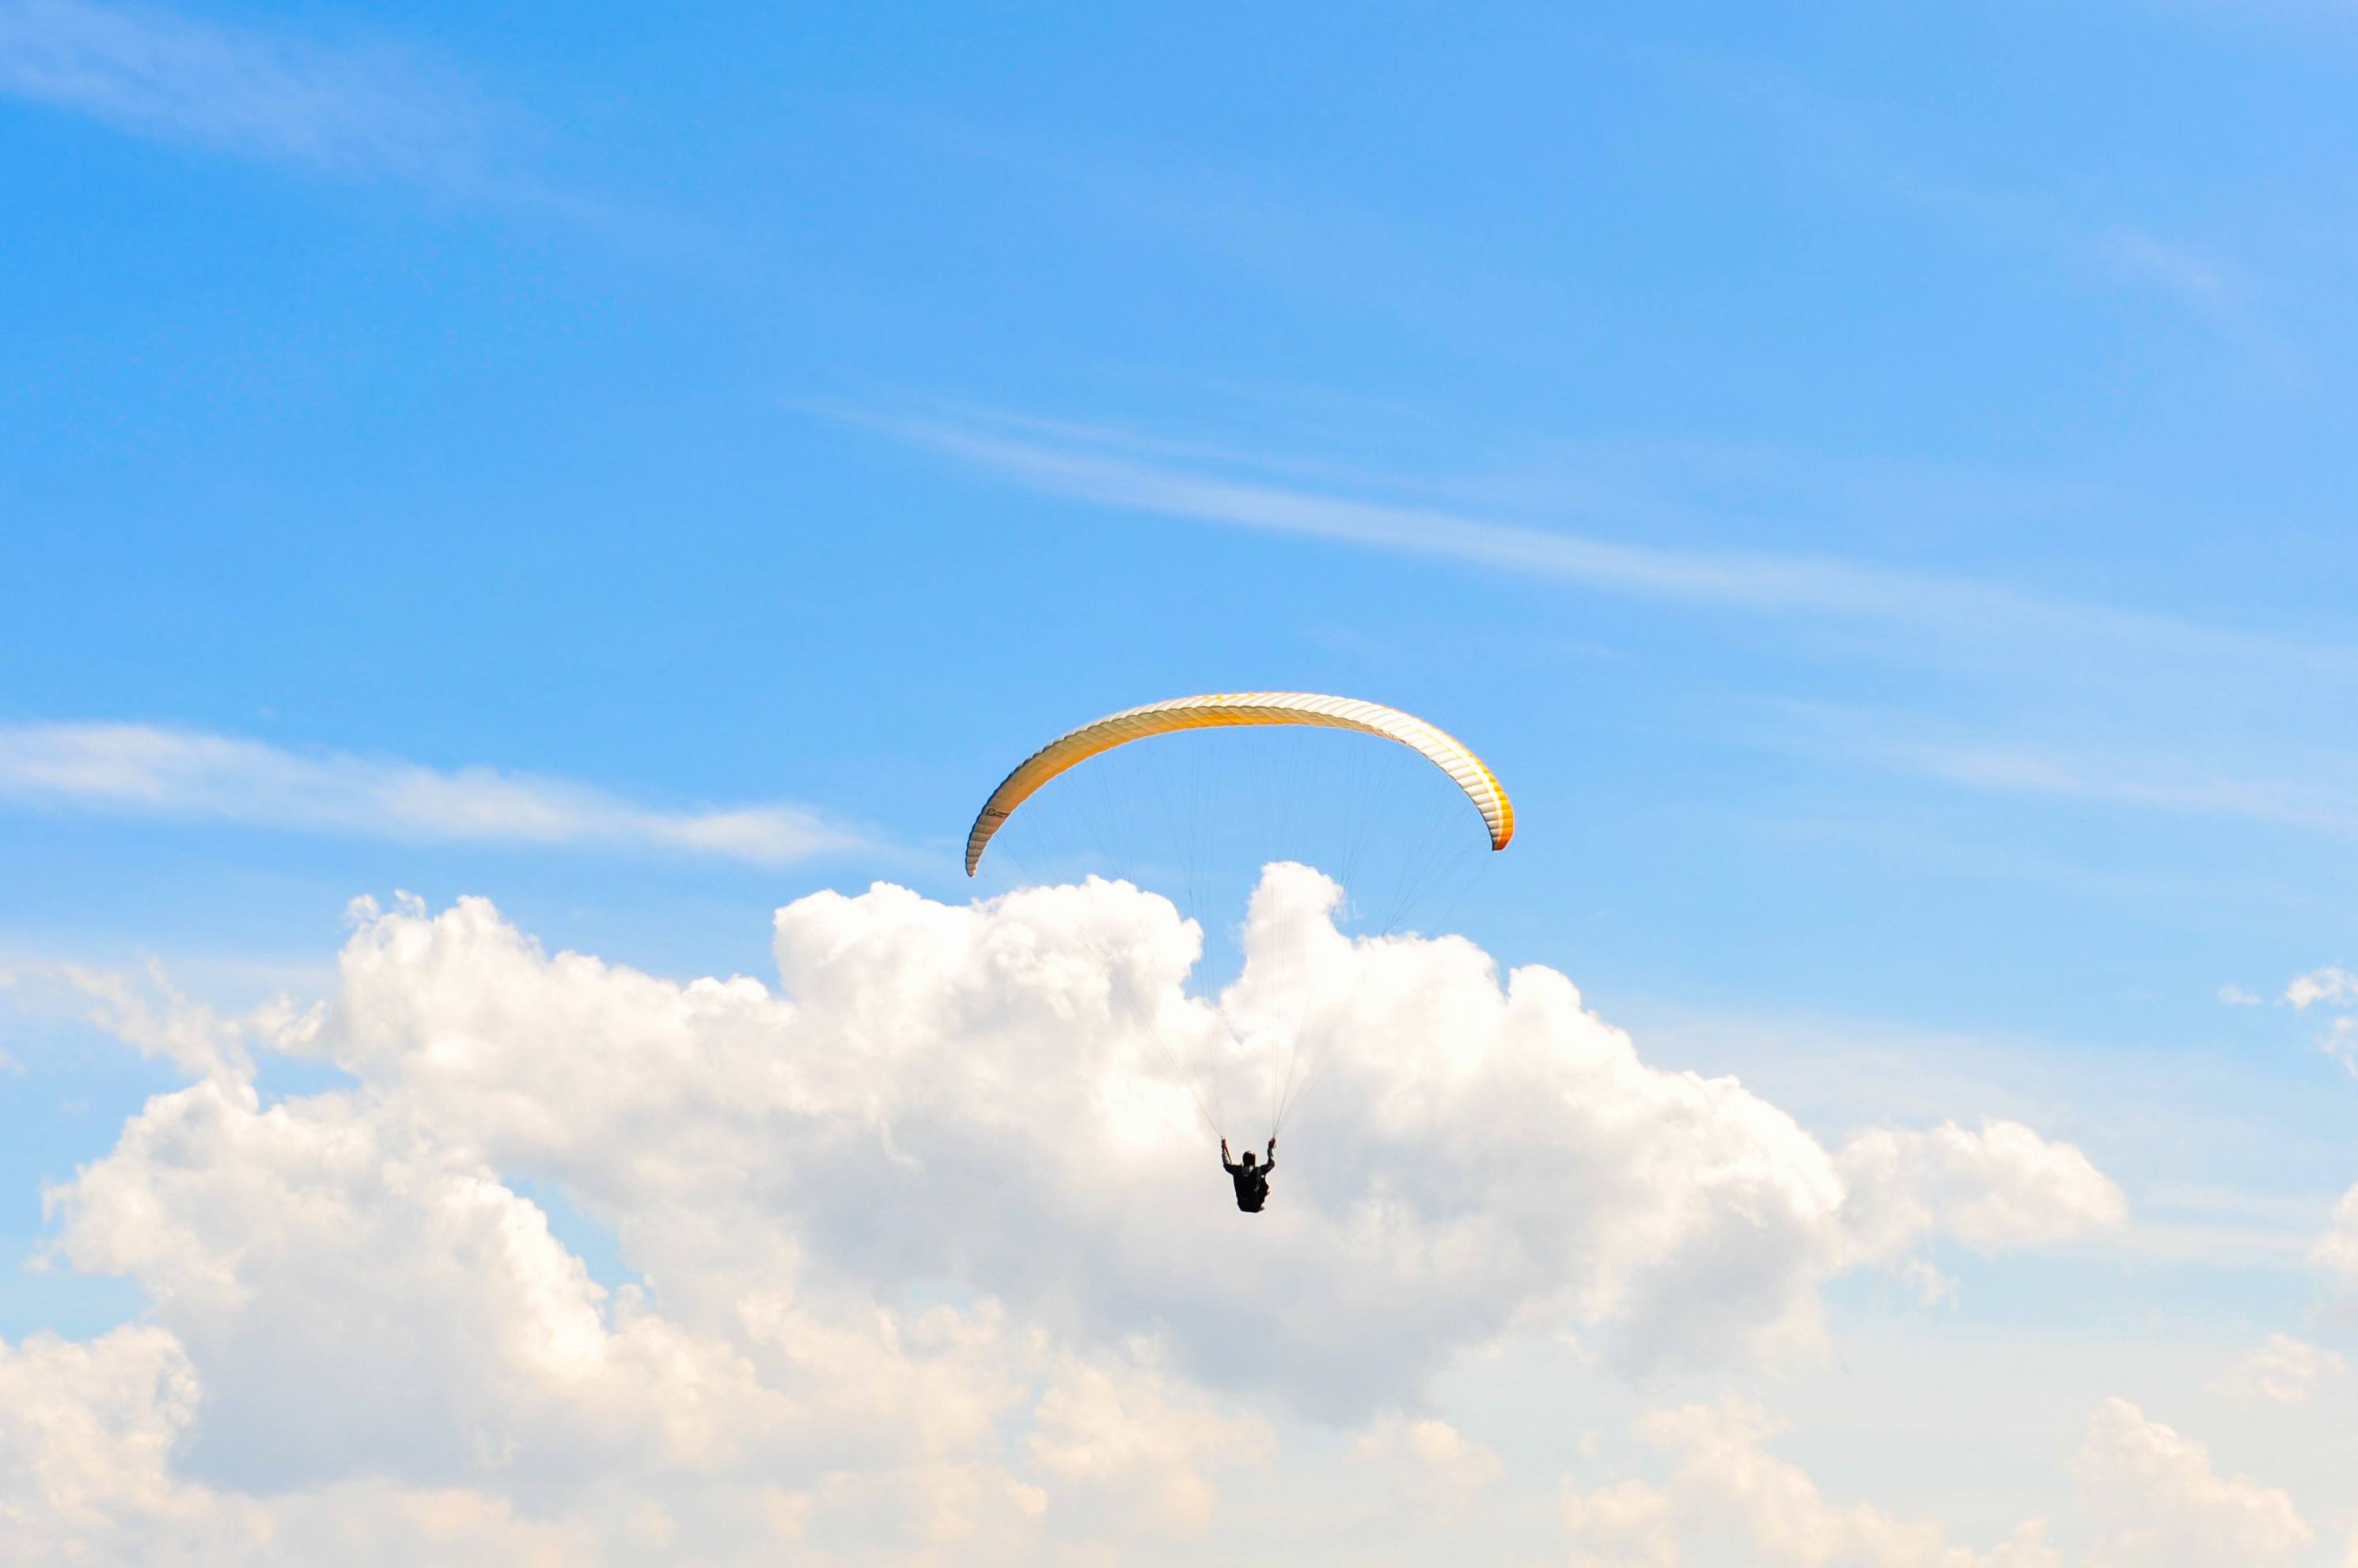 滑翔伞体验 想飞上天,和太阳肩并肩,体验空中飞行乐趣